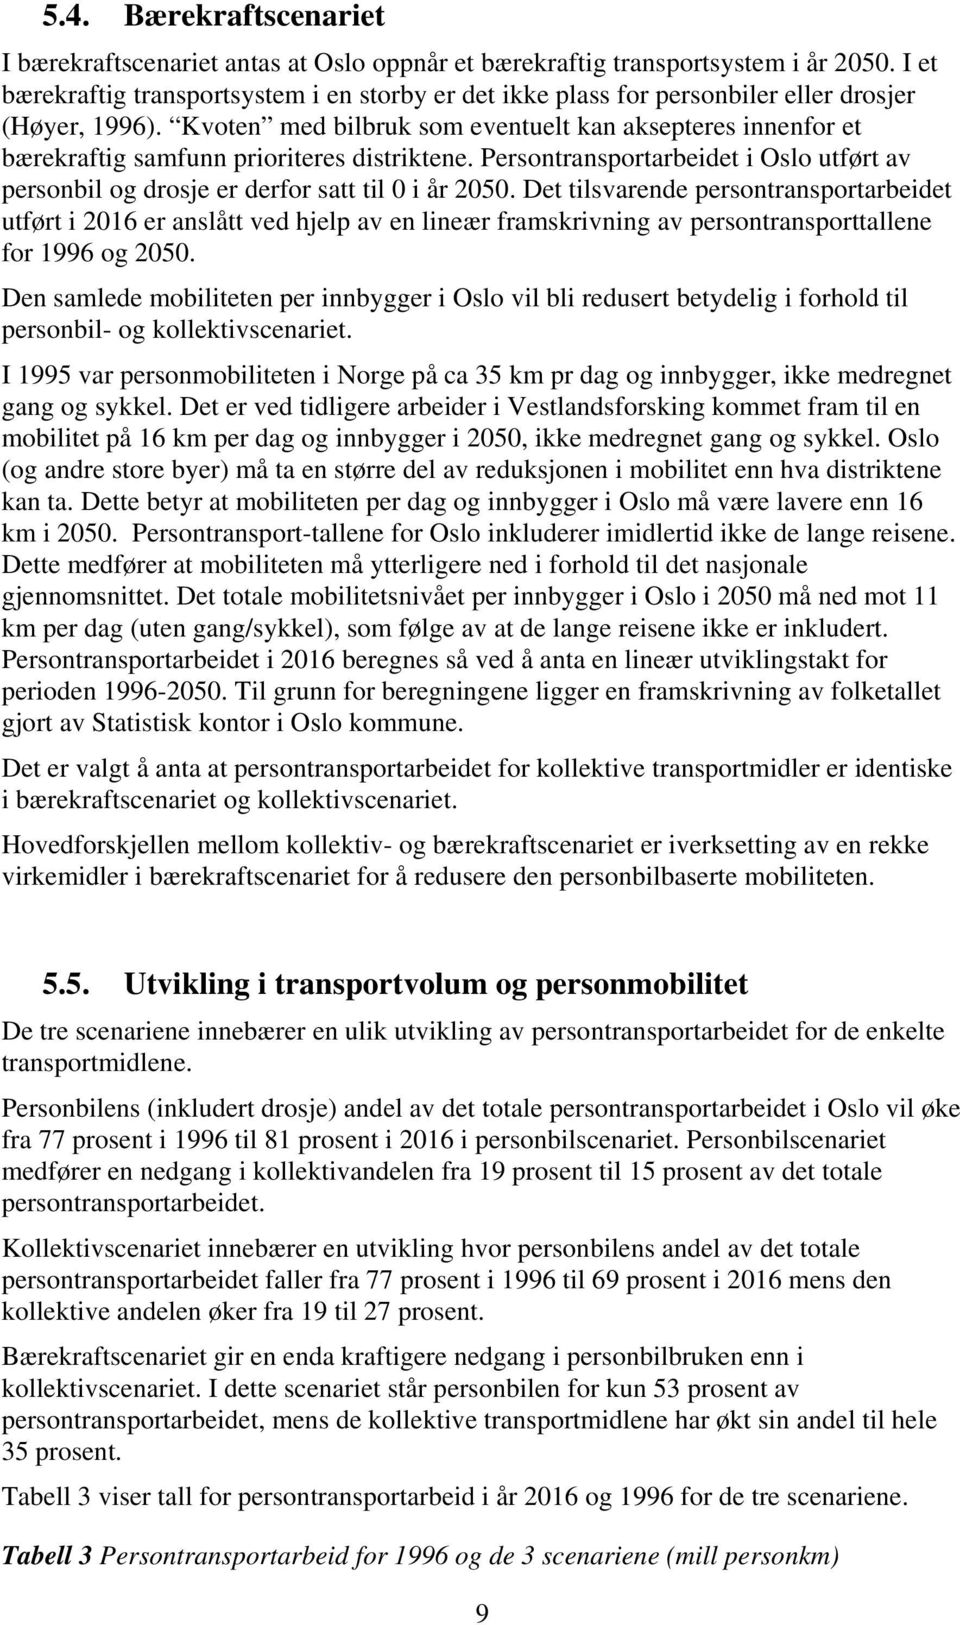 Kvoten med bilbruk som eventuelt kan aksepteres innenfor et bærekraftig samfunn prioriteres distriktene. Persontransportarbeidet i Oslo utført av personbil og drosje er derfor satt til 0 i år 2050.